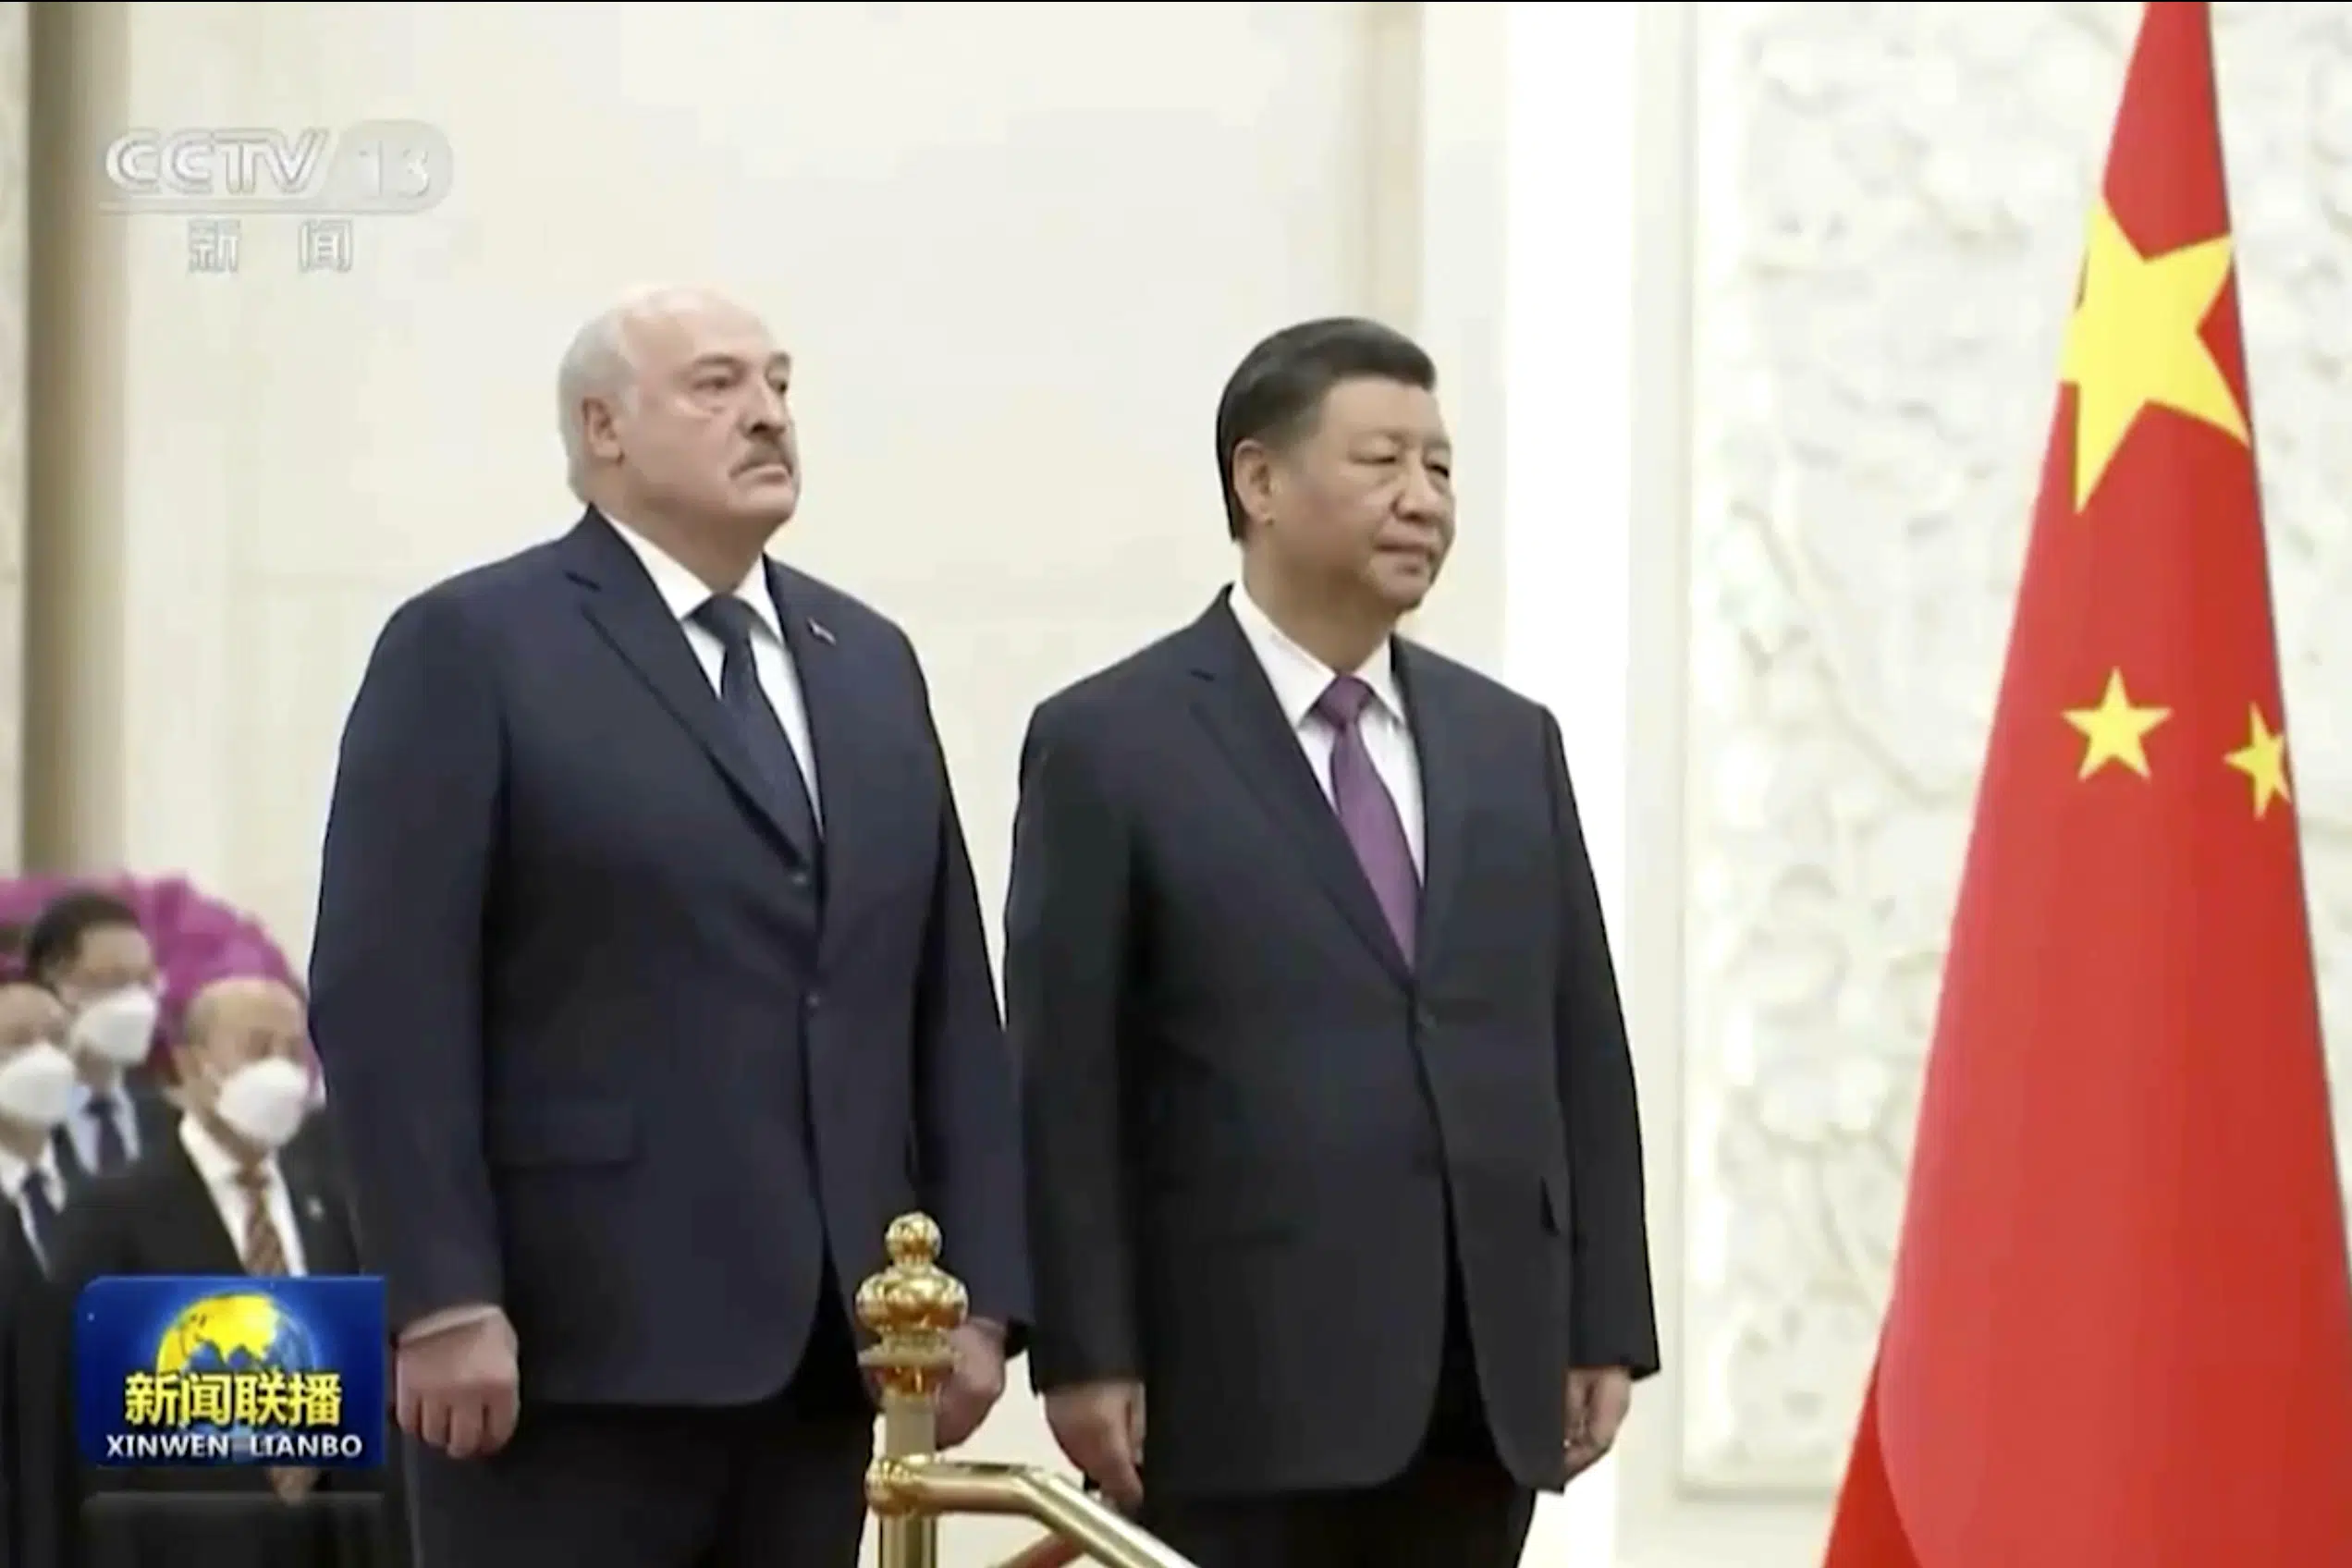 Los presidentes de China y Bielorrusia piden un alto el fuego y conversaciones en Ucrania